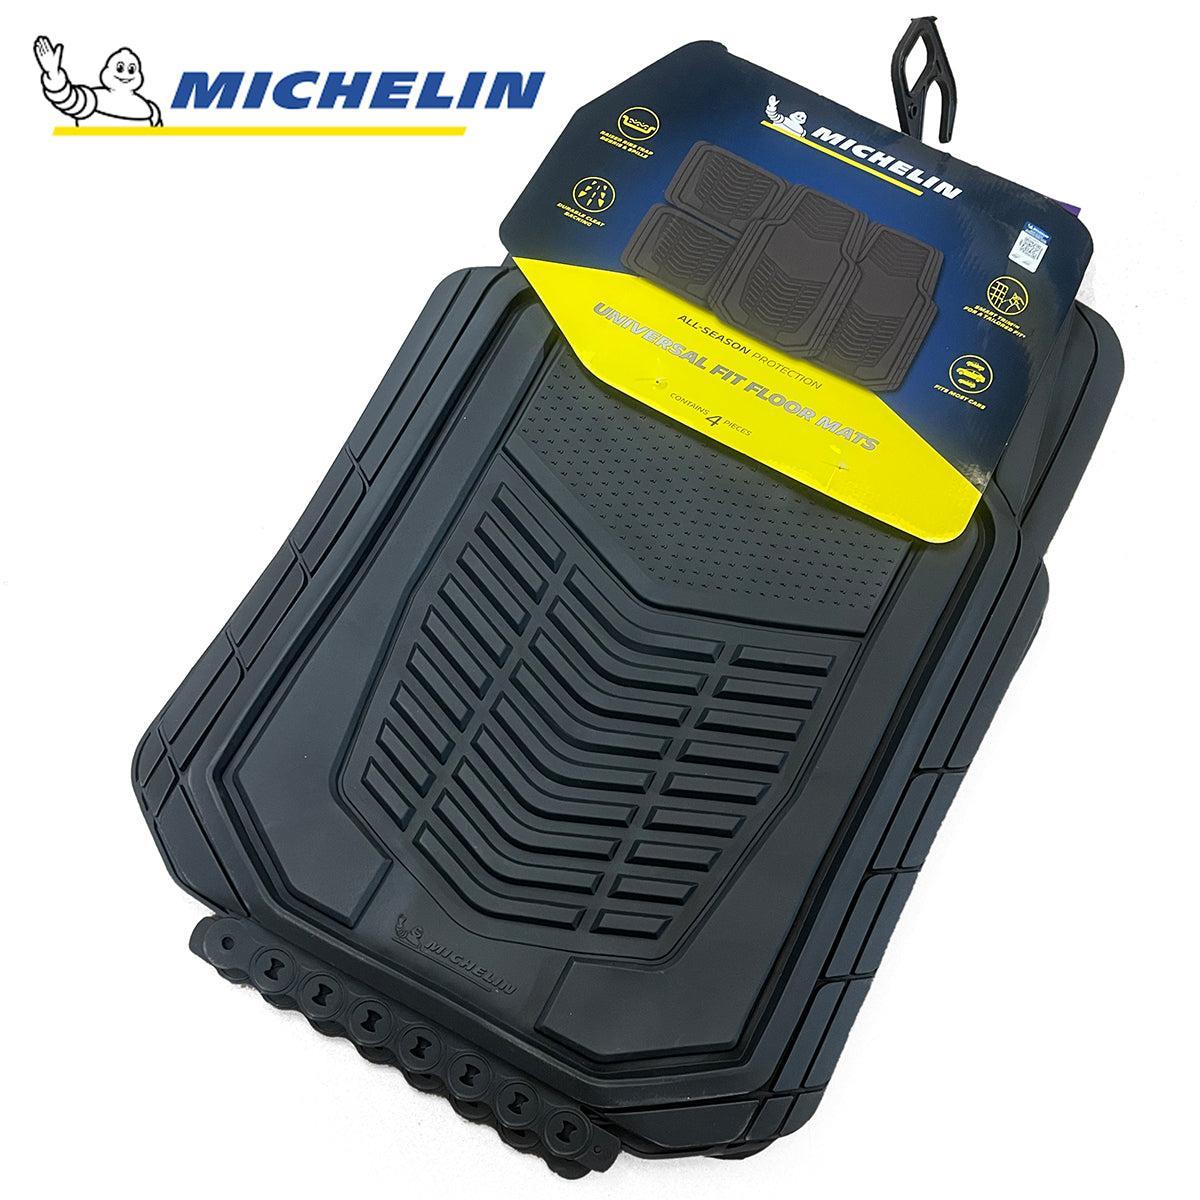 Michelin Car Floor Mat Universal Set Smart Trim for Vehicle 4 pcs Rubber Carpet